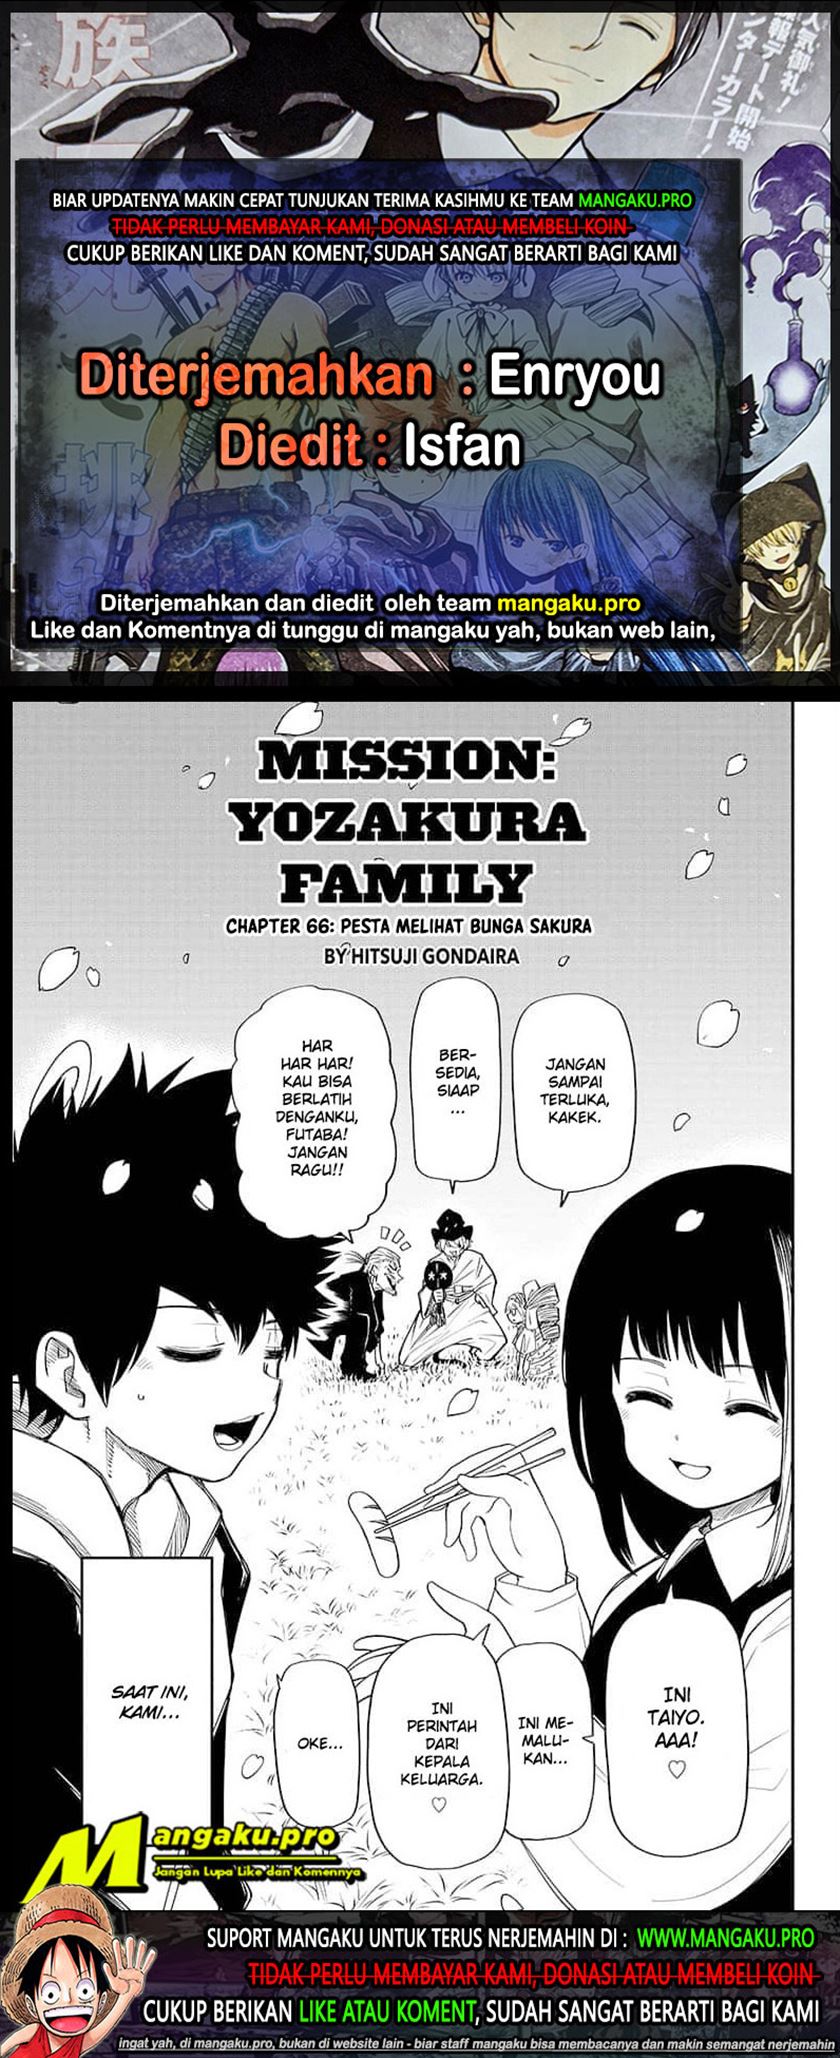 Mission: Yozakura Family Chapter 66